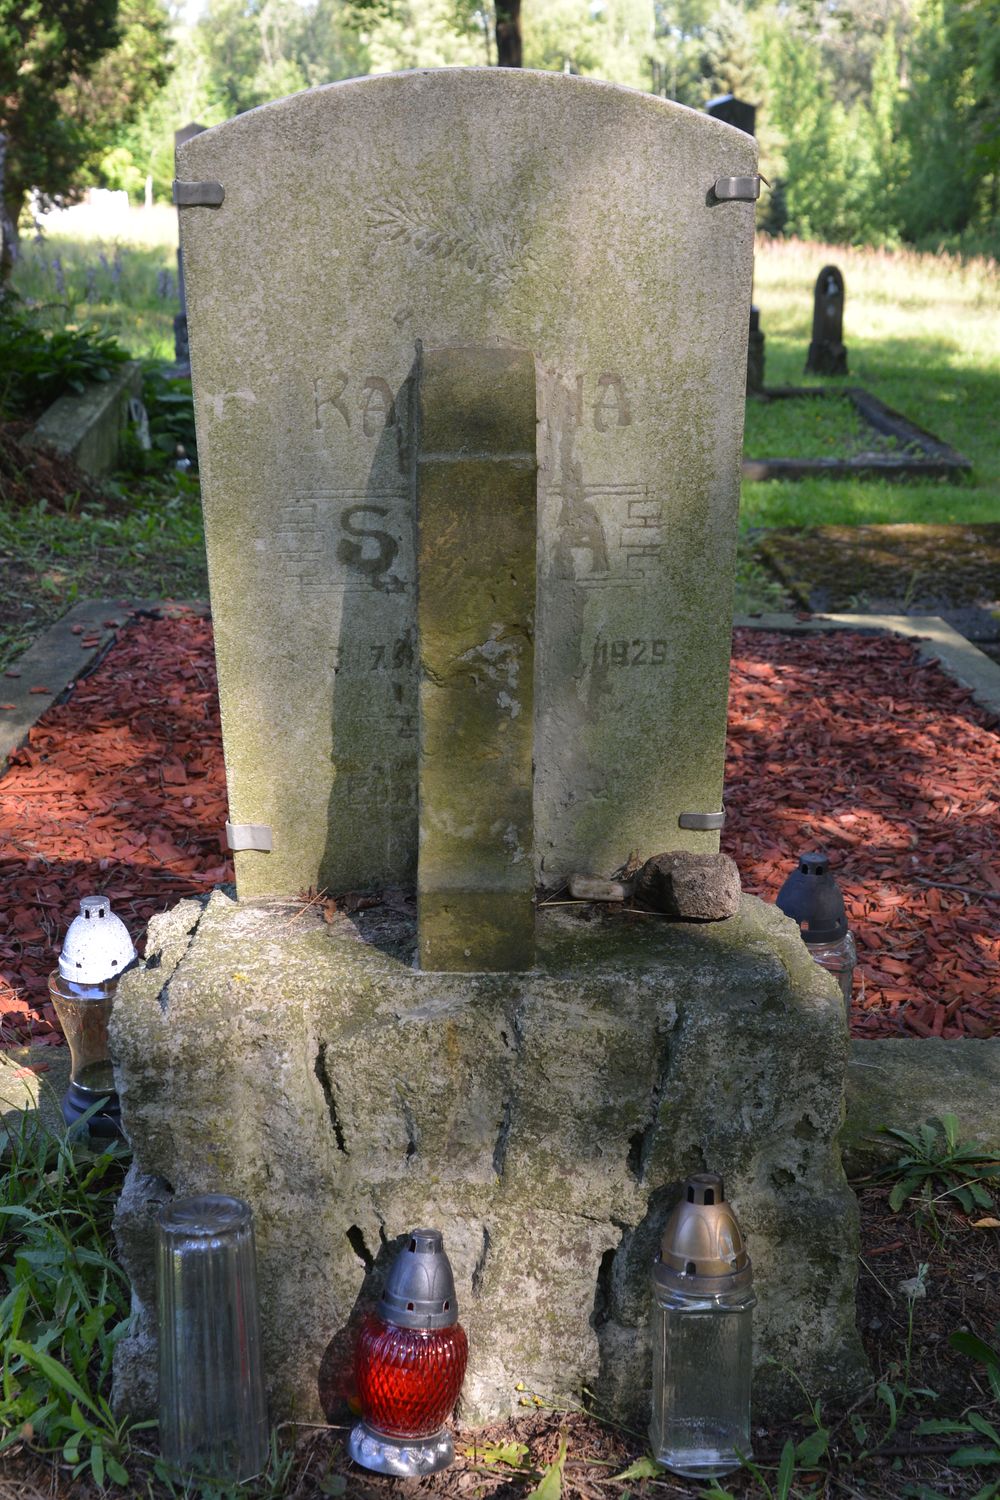 Tombstone of the Syhov family, Karviná Doly cemetery